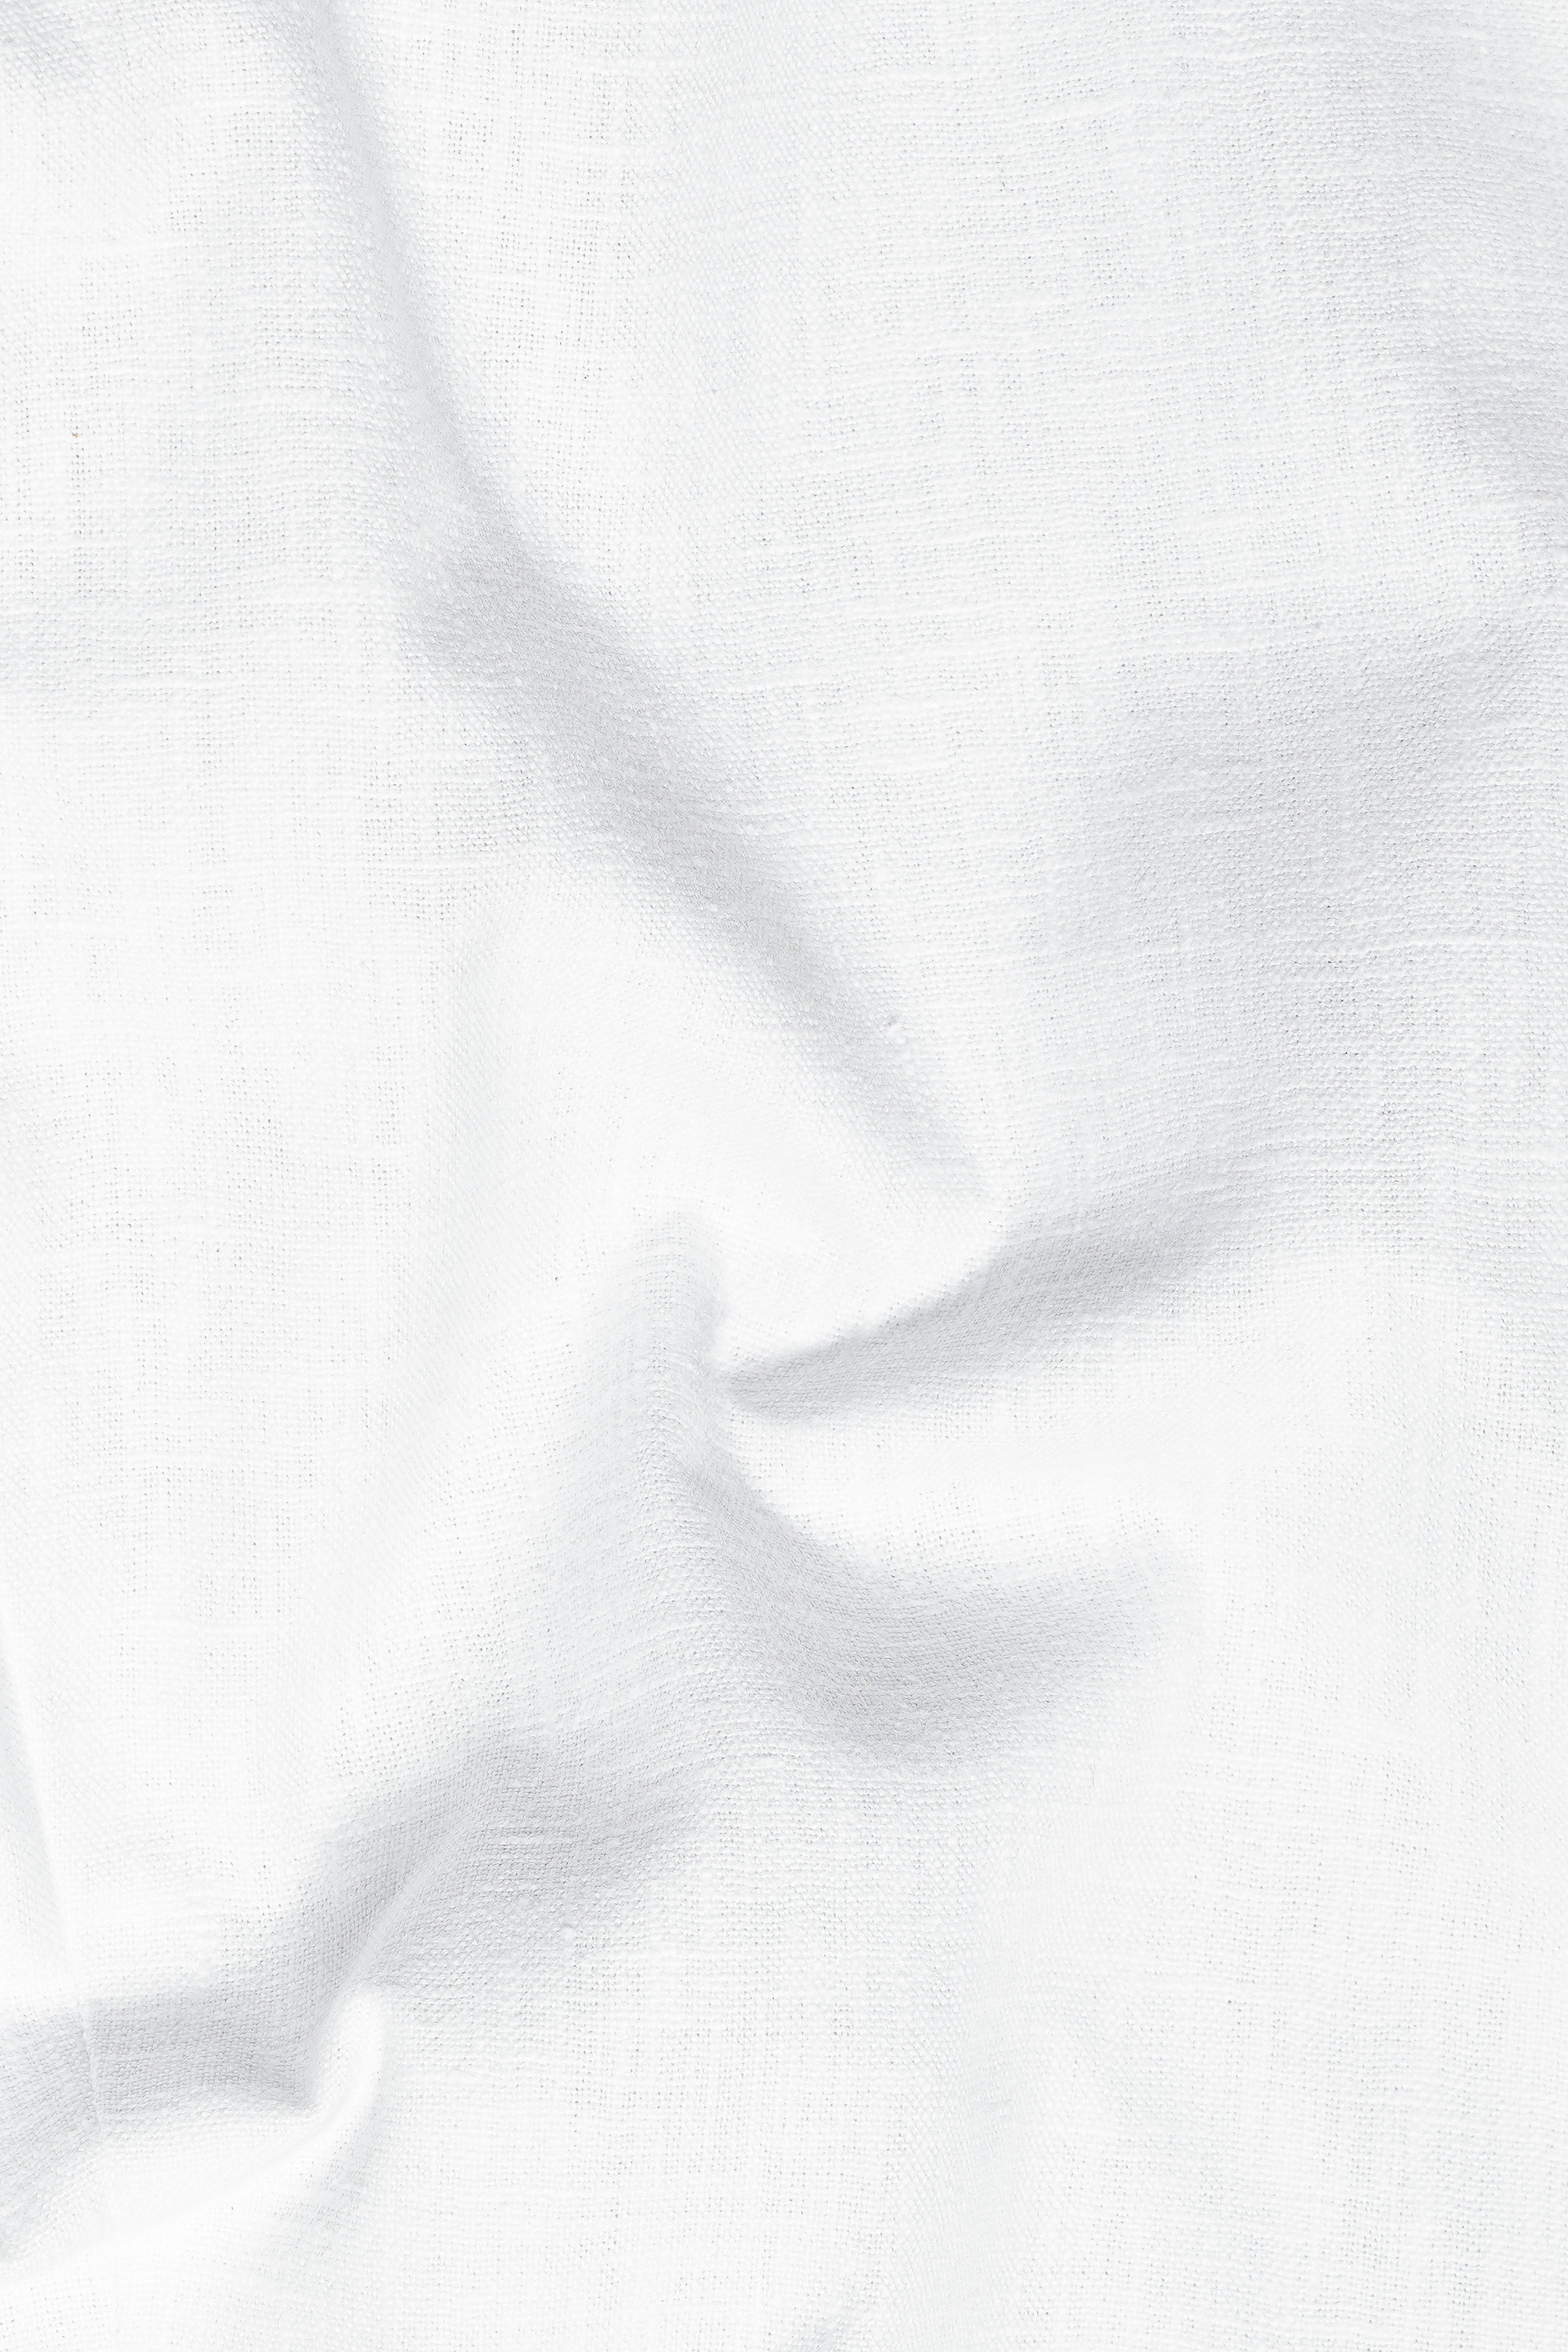 Bright White Luxurious Linen Waistcoat V3042-36, V3042-38, V3042-40, V3042-42, V3042-44, V3042-46, V3042-48, V3042-50, V3042-42, V3042-54, V3042-56, V3042-58, V3042-60